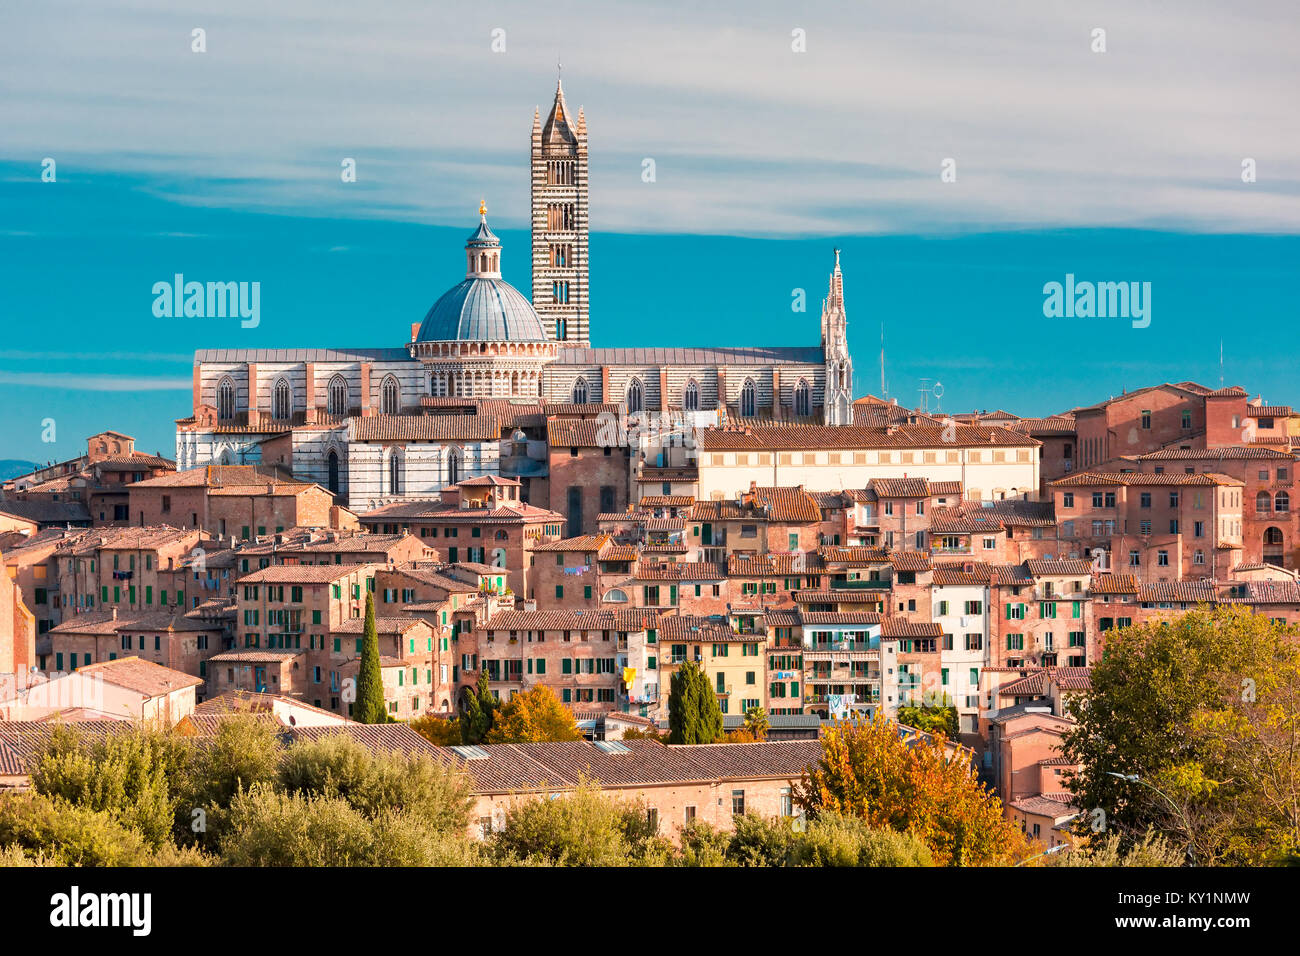 Cattedrale di Siena nella giornata di sole, Toscana, Italia Foto Stock